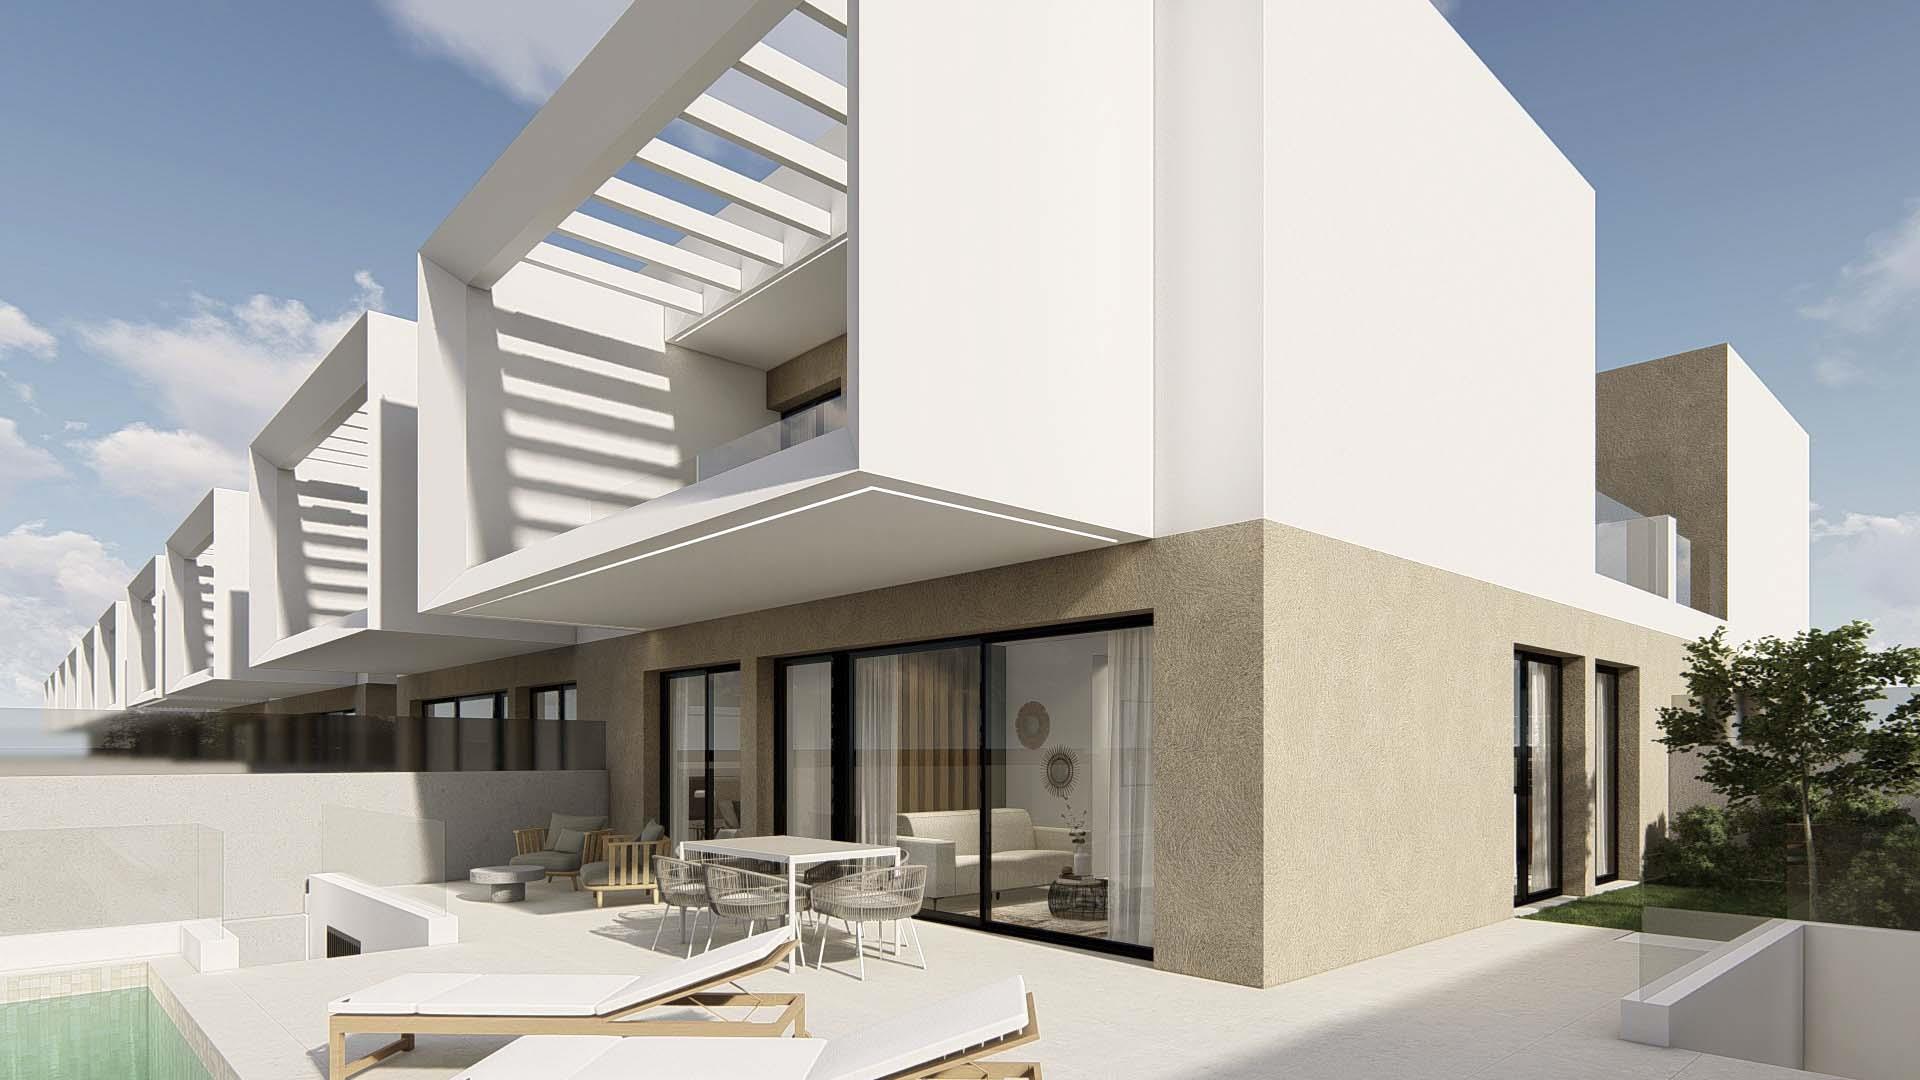 Nueva villa de estilo moderno en costa blanca